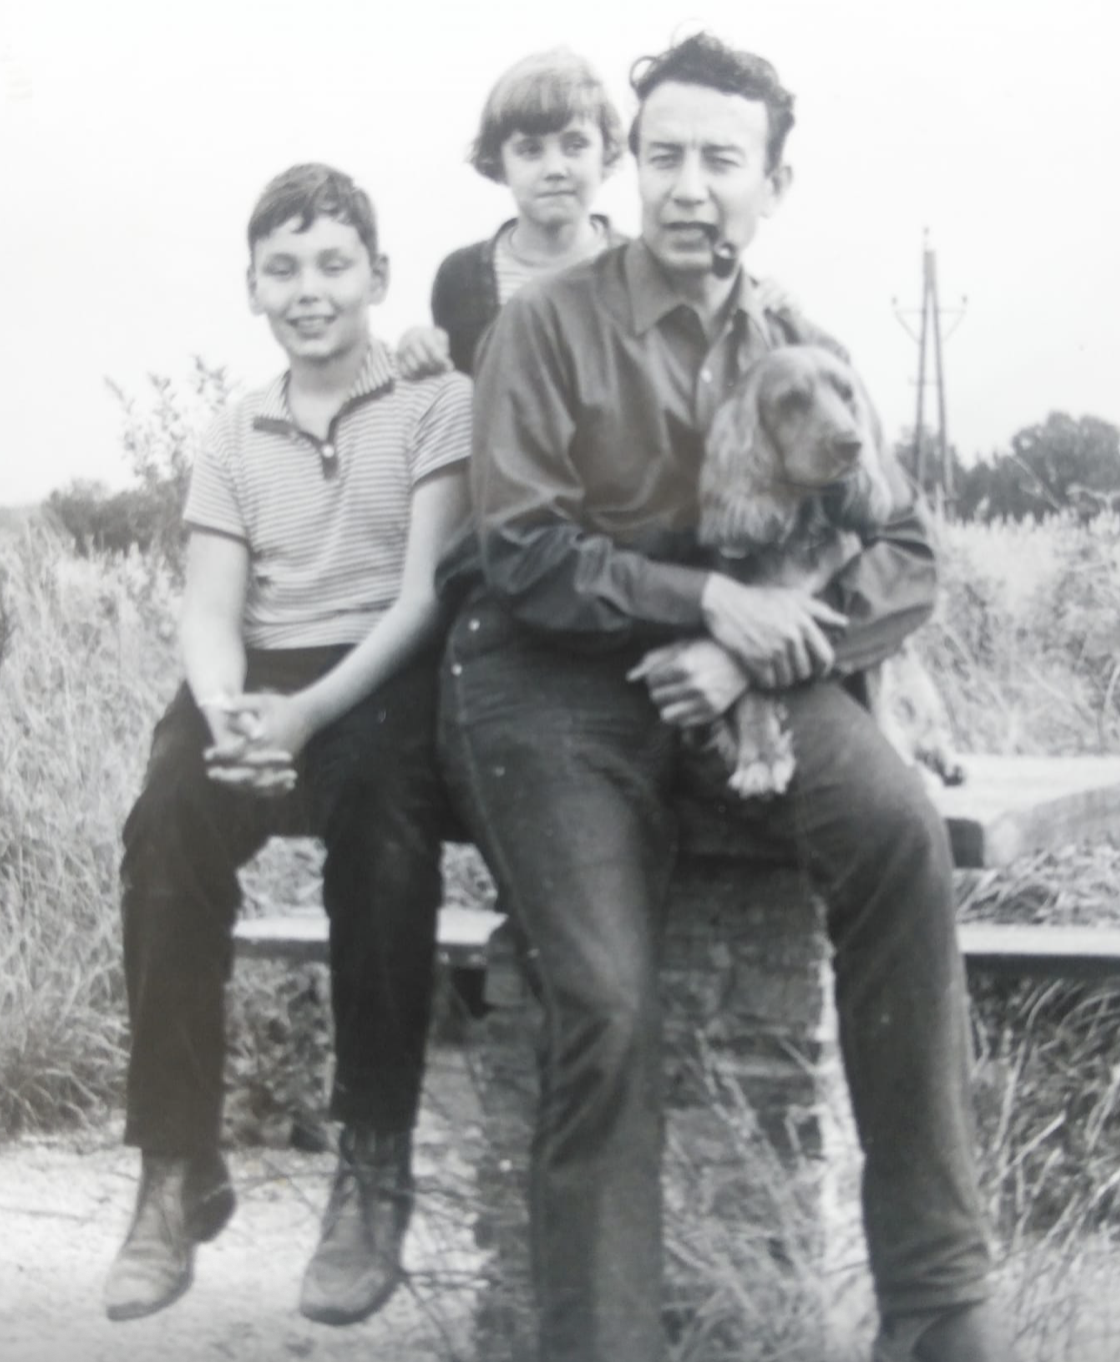 Papa Dündar mit Cockerspaniel Metzciko auf dem Arm und mit seinem Sohn Ahmet und Töchterchen Alev. Foto: privat